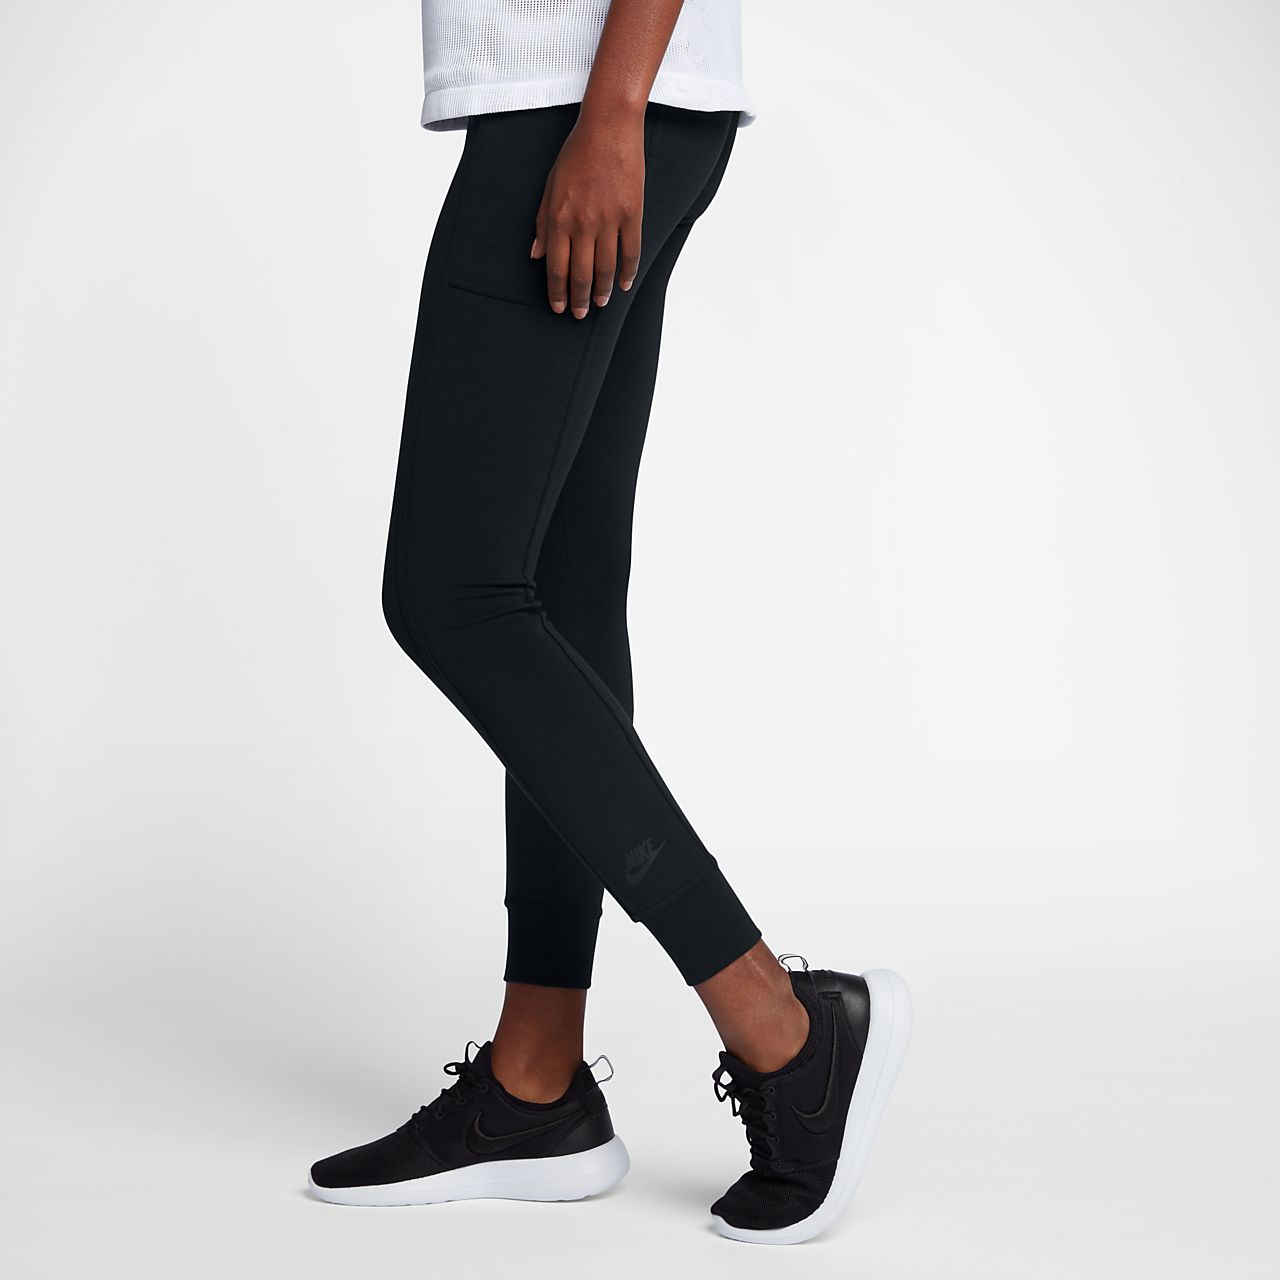 Nike Sportswear Essential Women's Leggings